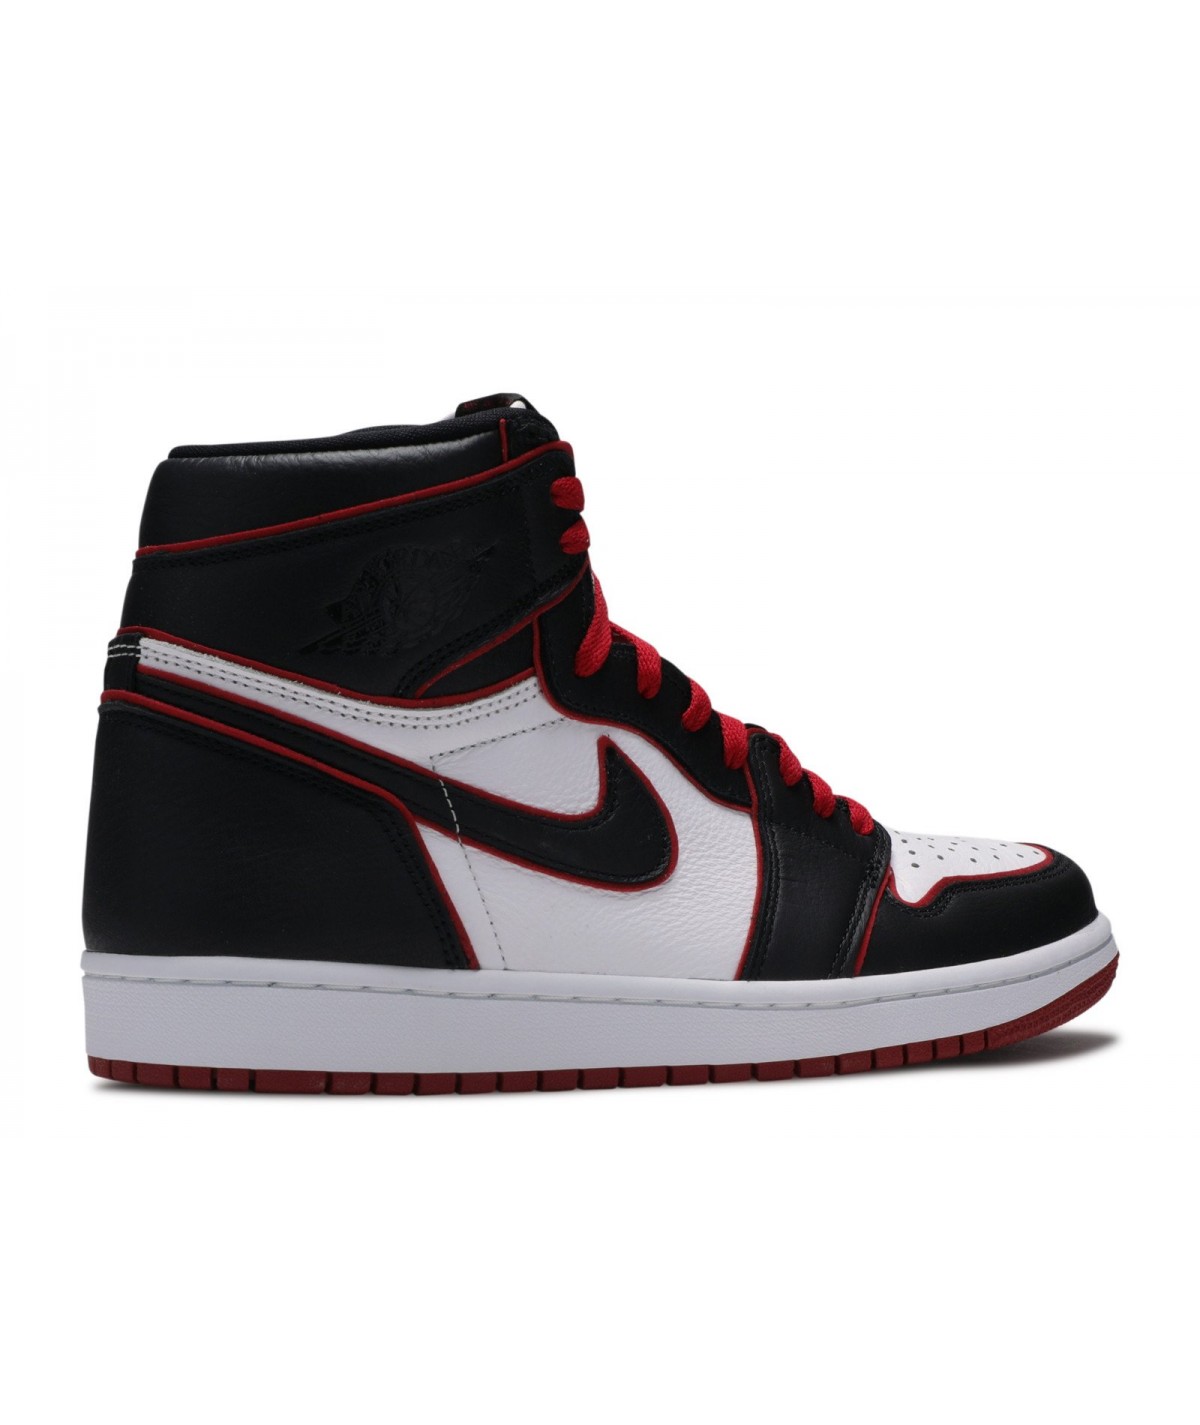 Nike Air Jordan 1 Retro I Sneakers Authentique Limité I Edition Ltd I  Paiement sécurisé